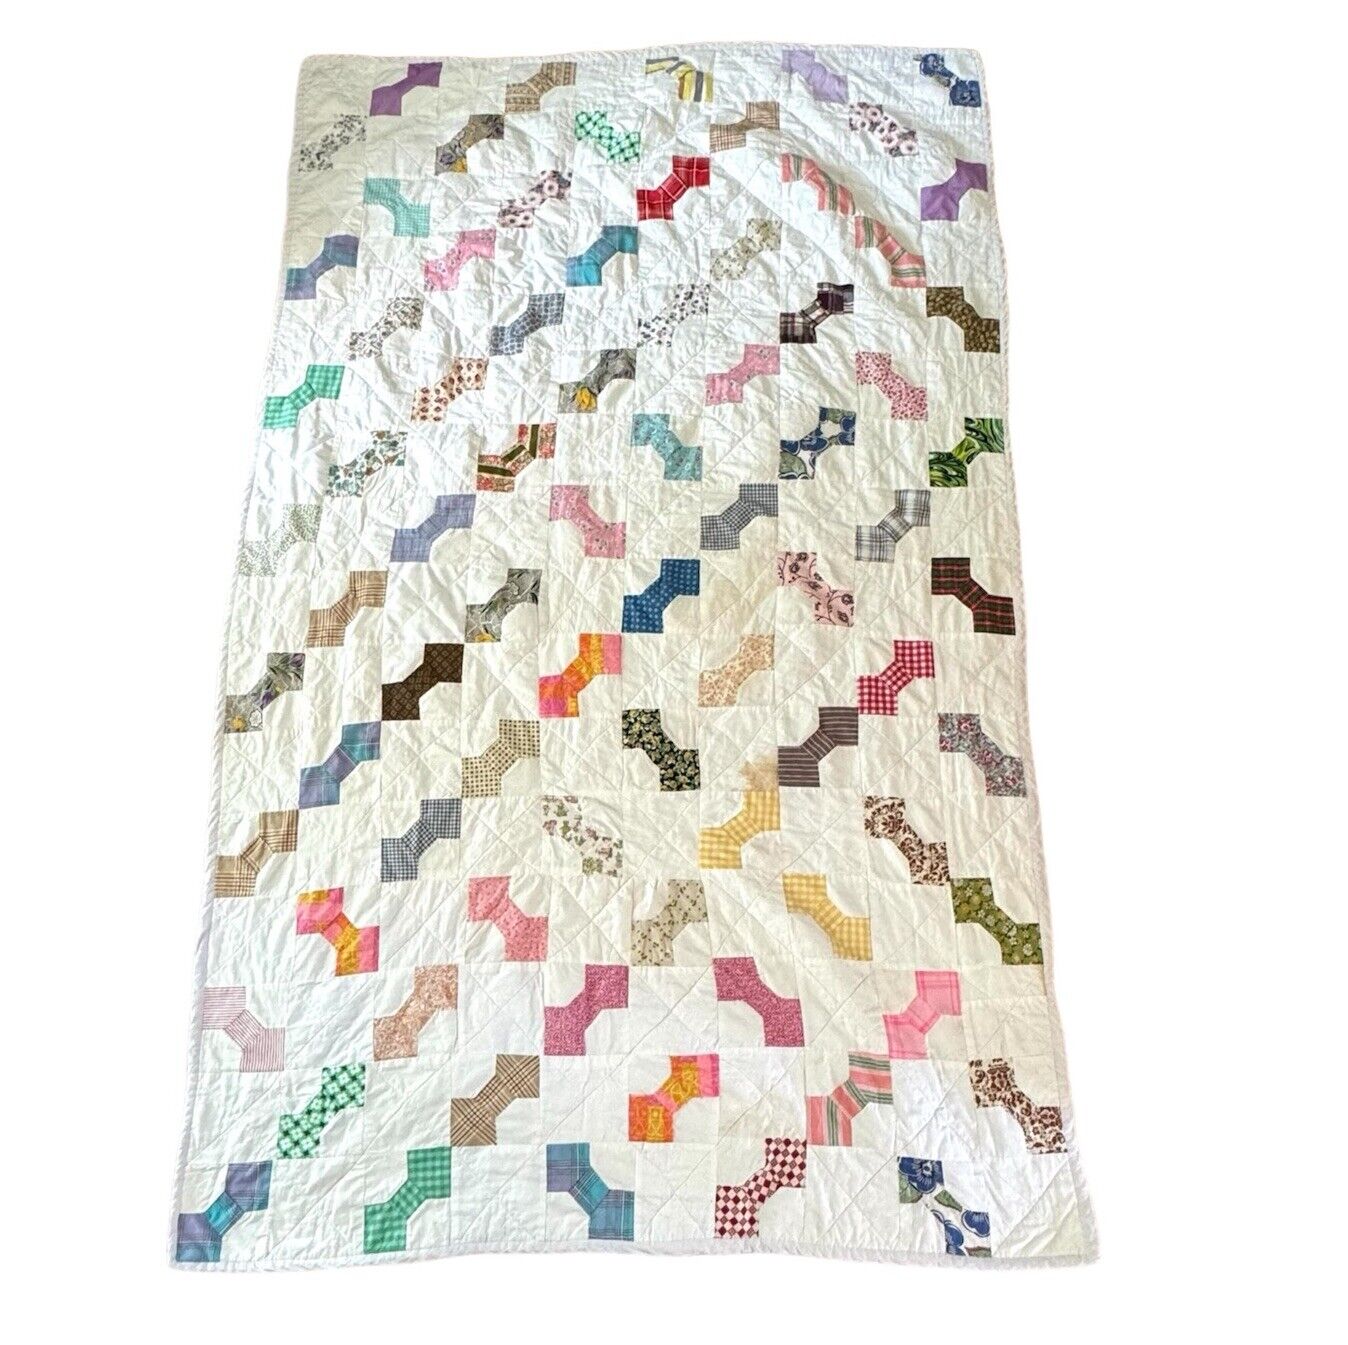 Vintage Bowtie Patchwork Quilt Handmade 100% Cotton 54” X 88” Colorful